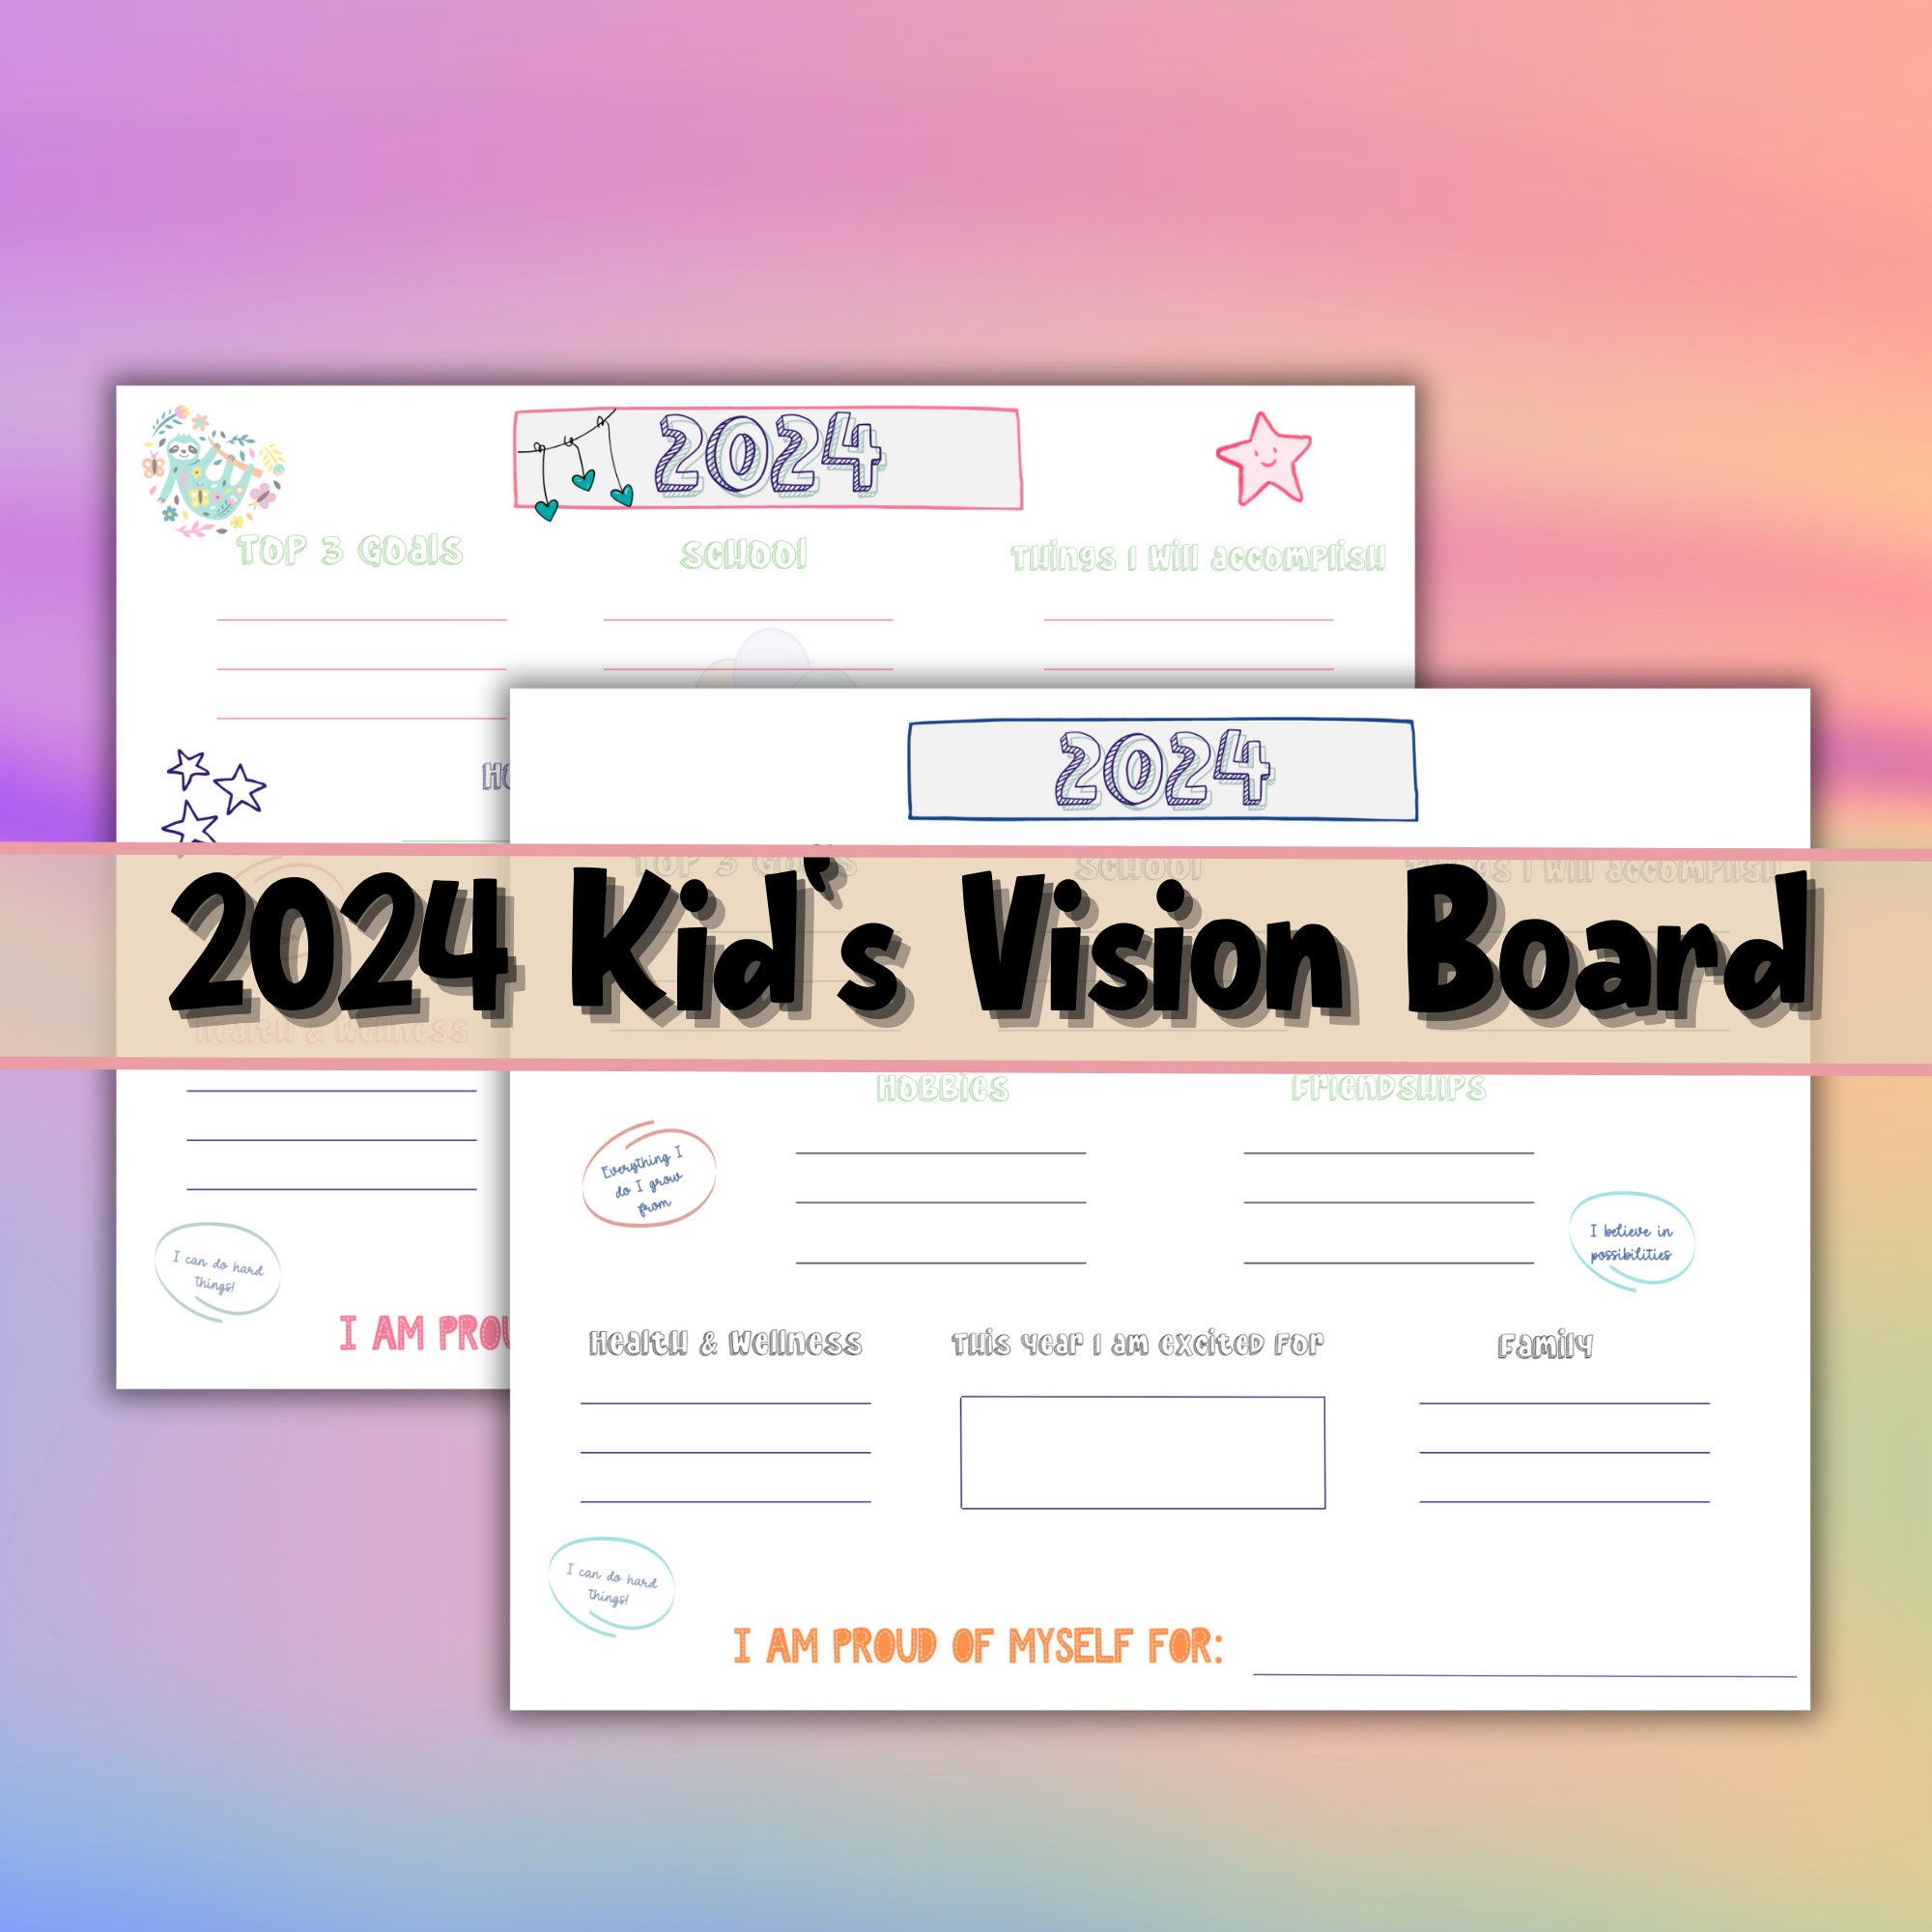 Visions for 2024 - Vision board workshop